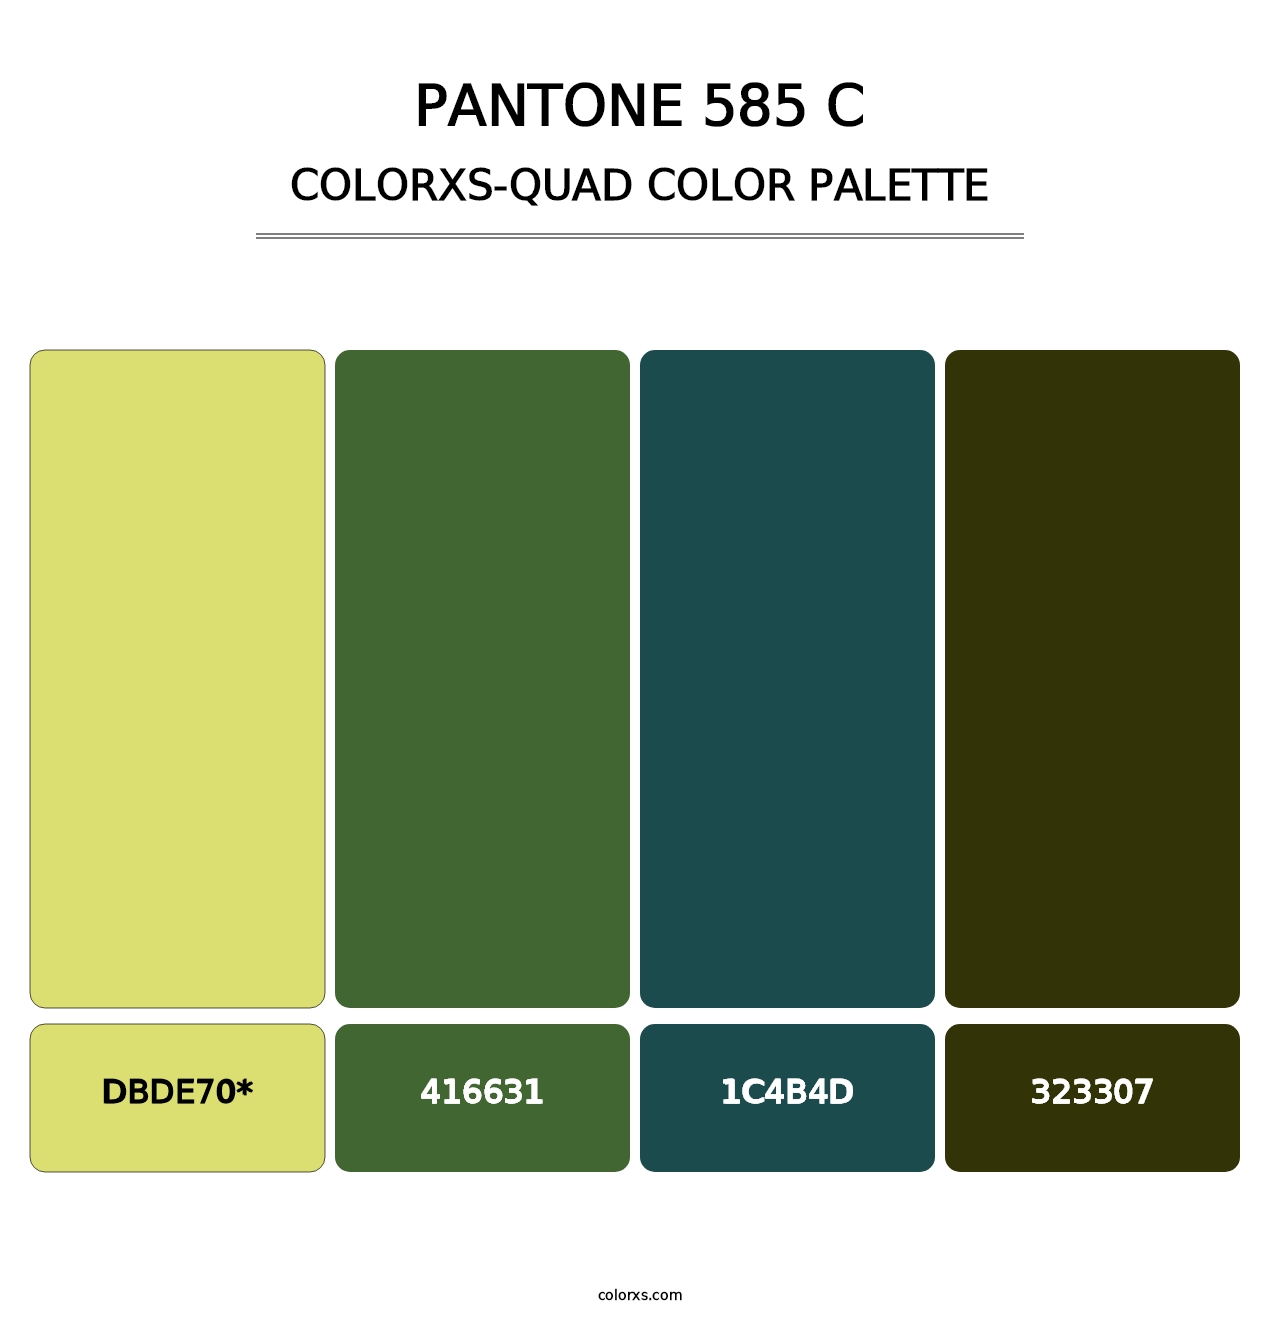 PANTONE 585 C - Colorxs Quad Palette